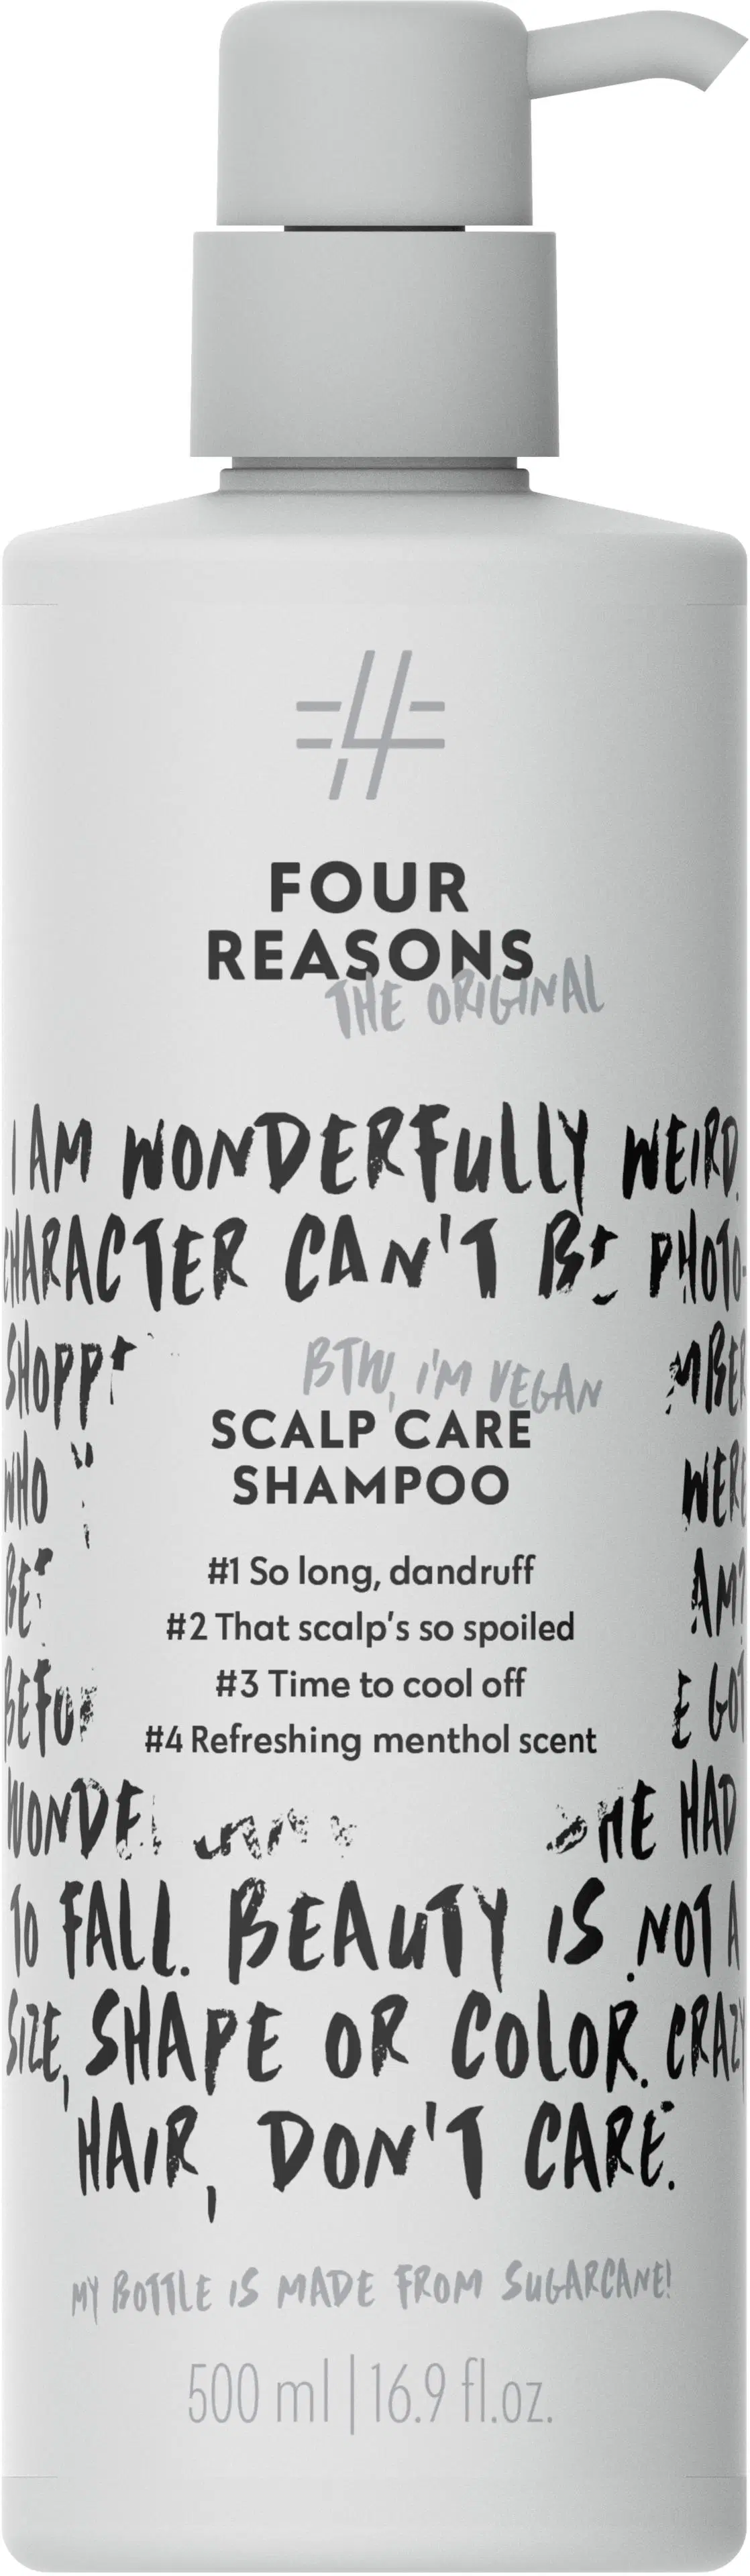 Four Reasons Original Scalp Care Shampoo 500 ml